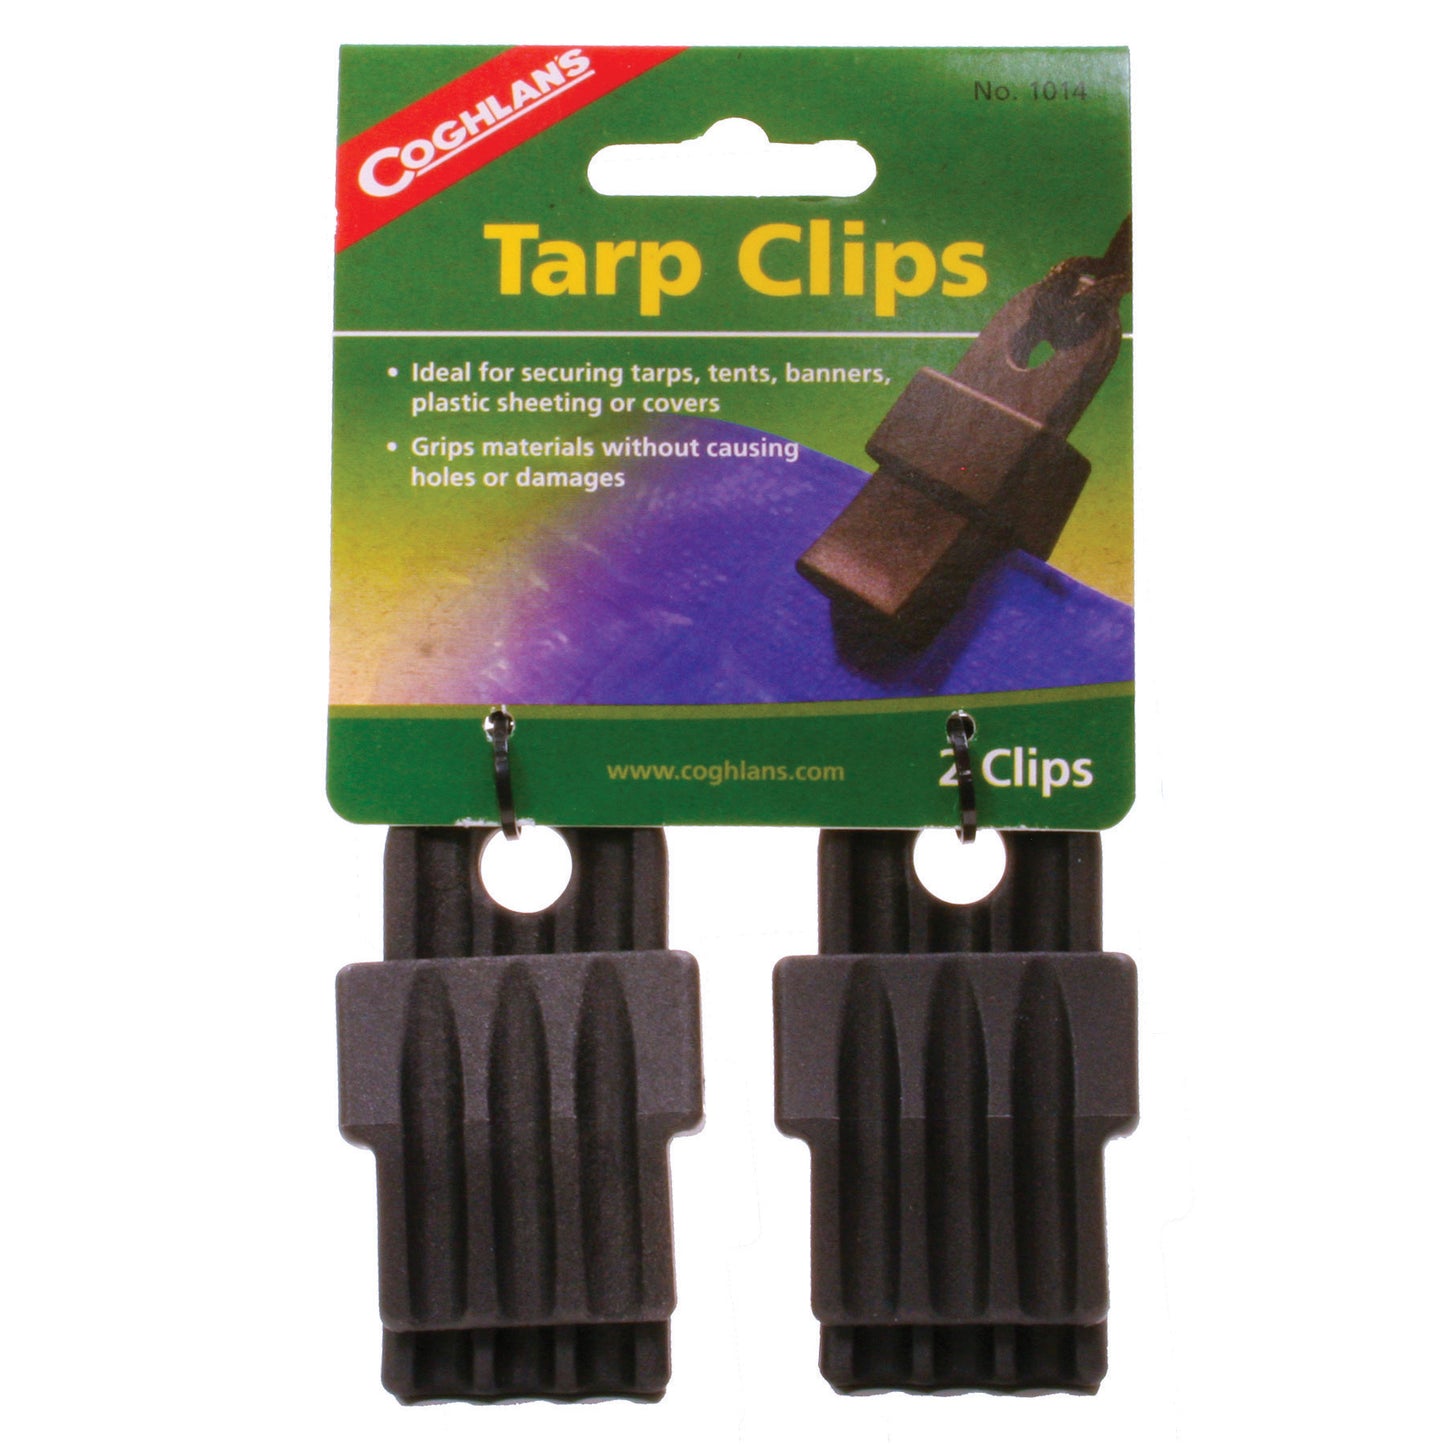 TARP CLIPS